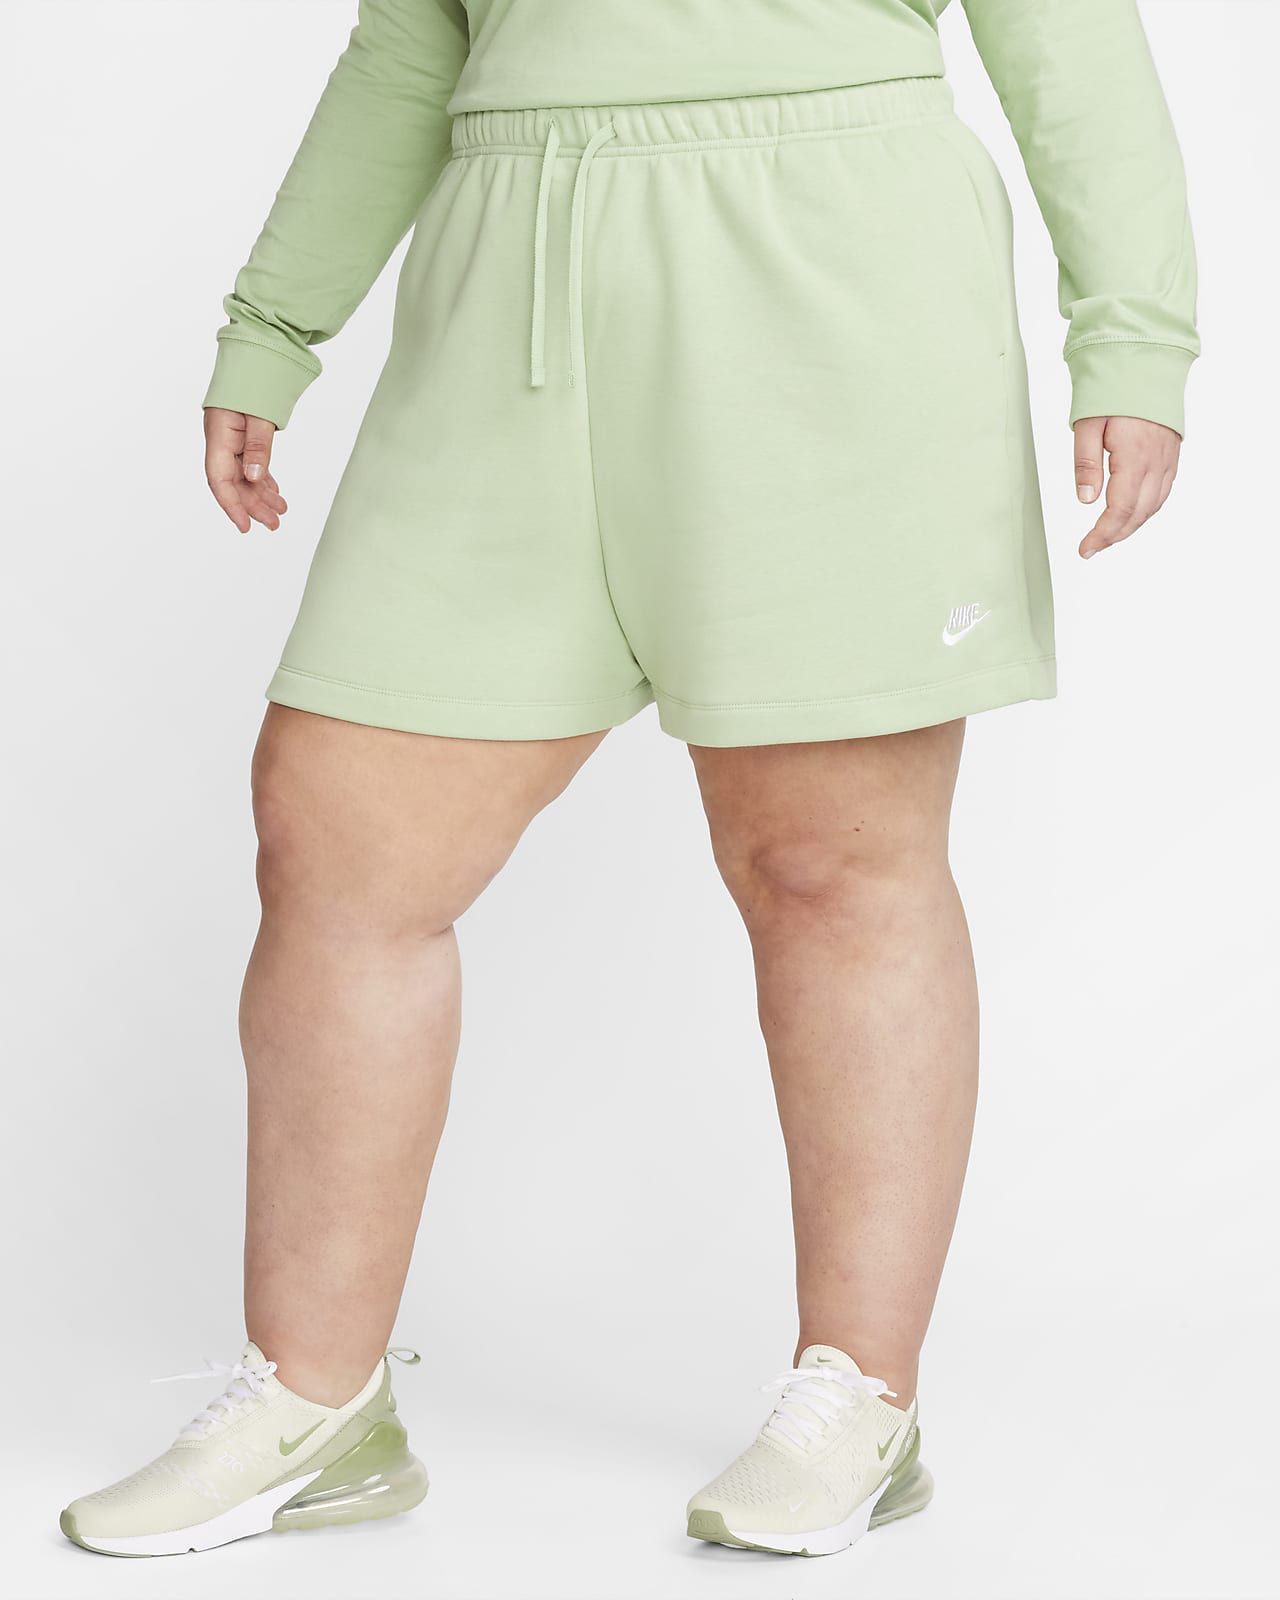 Nike Sportswear Essential Women's Mid-Rise Bike Shorts (Plus Size